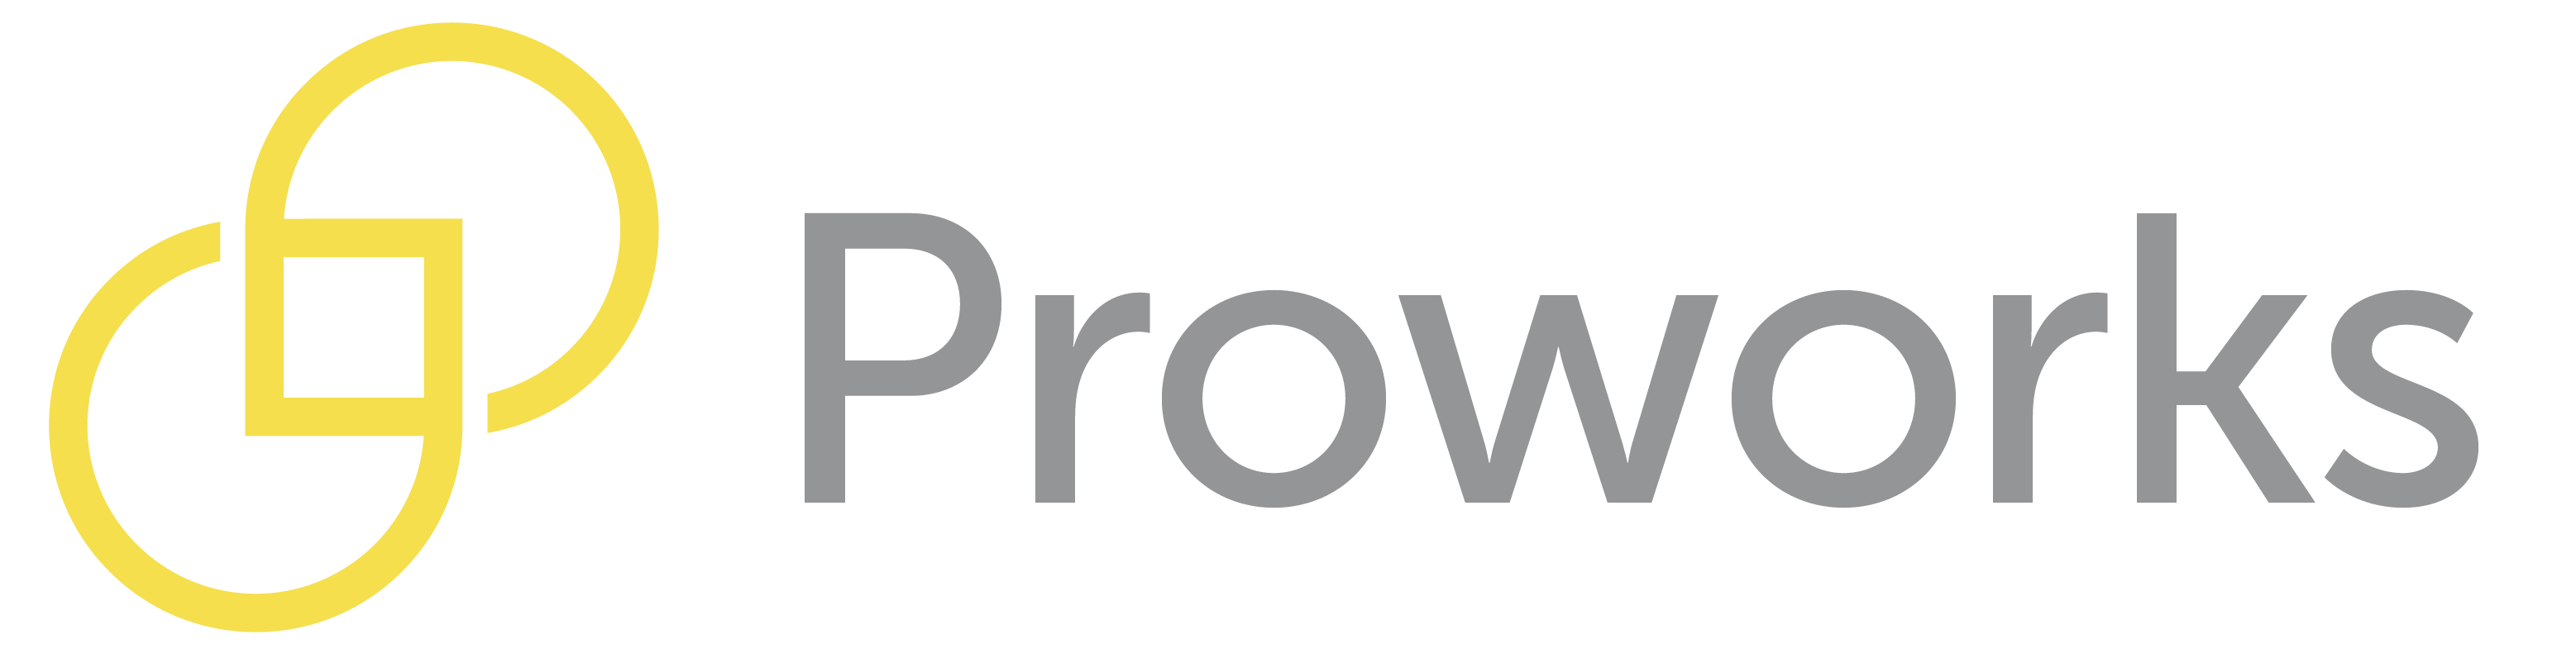 Proworks s.r.o. - Dodávky spotřebních materiálů pro výrobu a údržbu.   Realizace protipožárních prostupů.